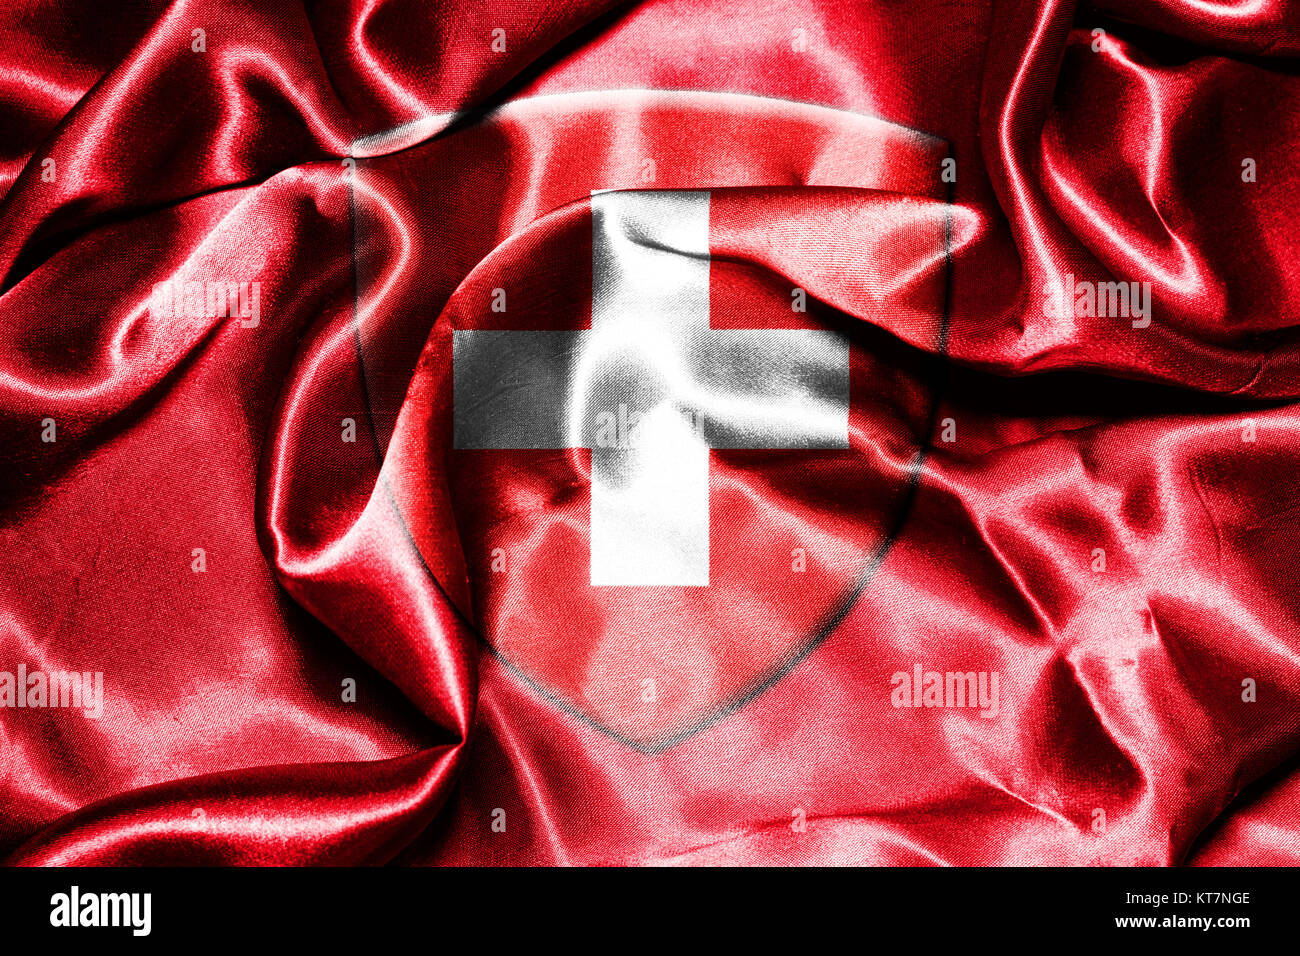 Switzerland National Flag Stock Photo